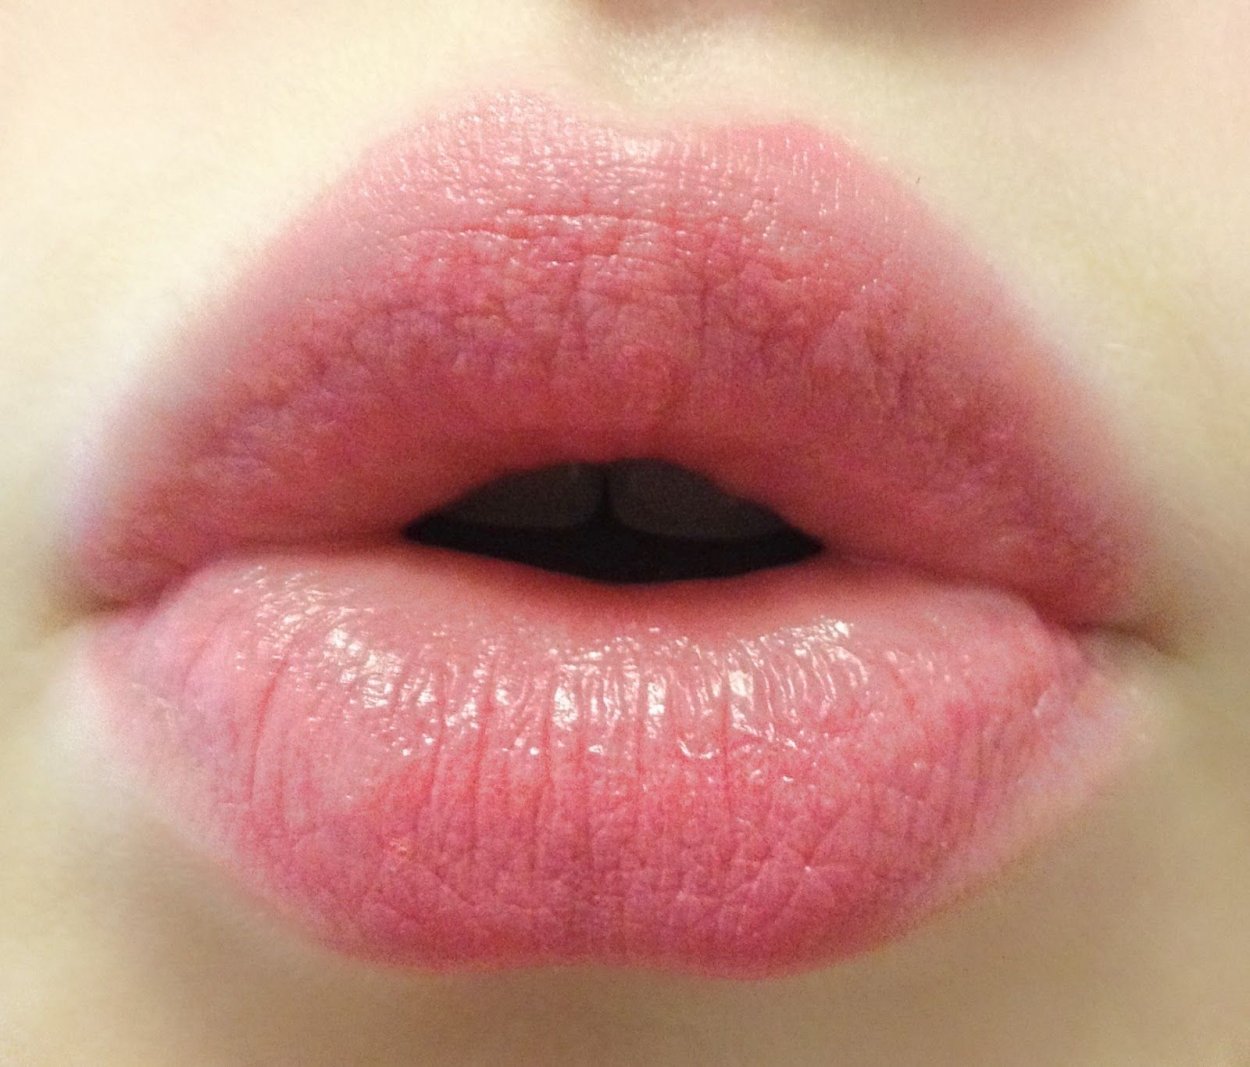 губы фото женские красивые без лица пухлые